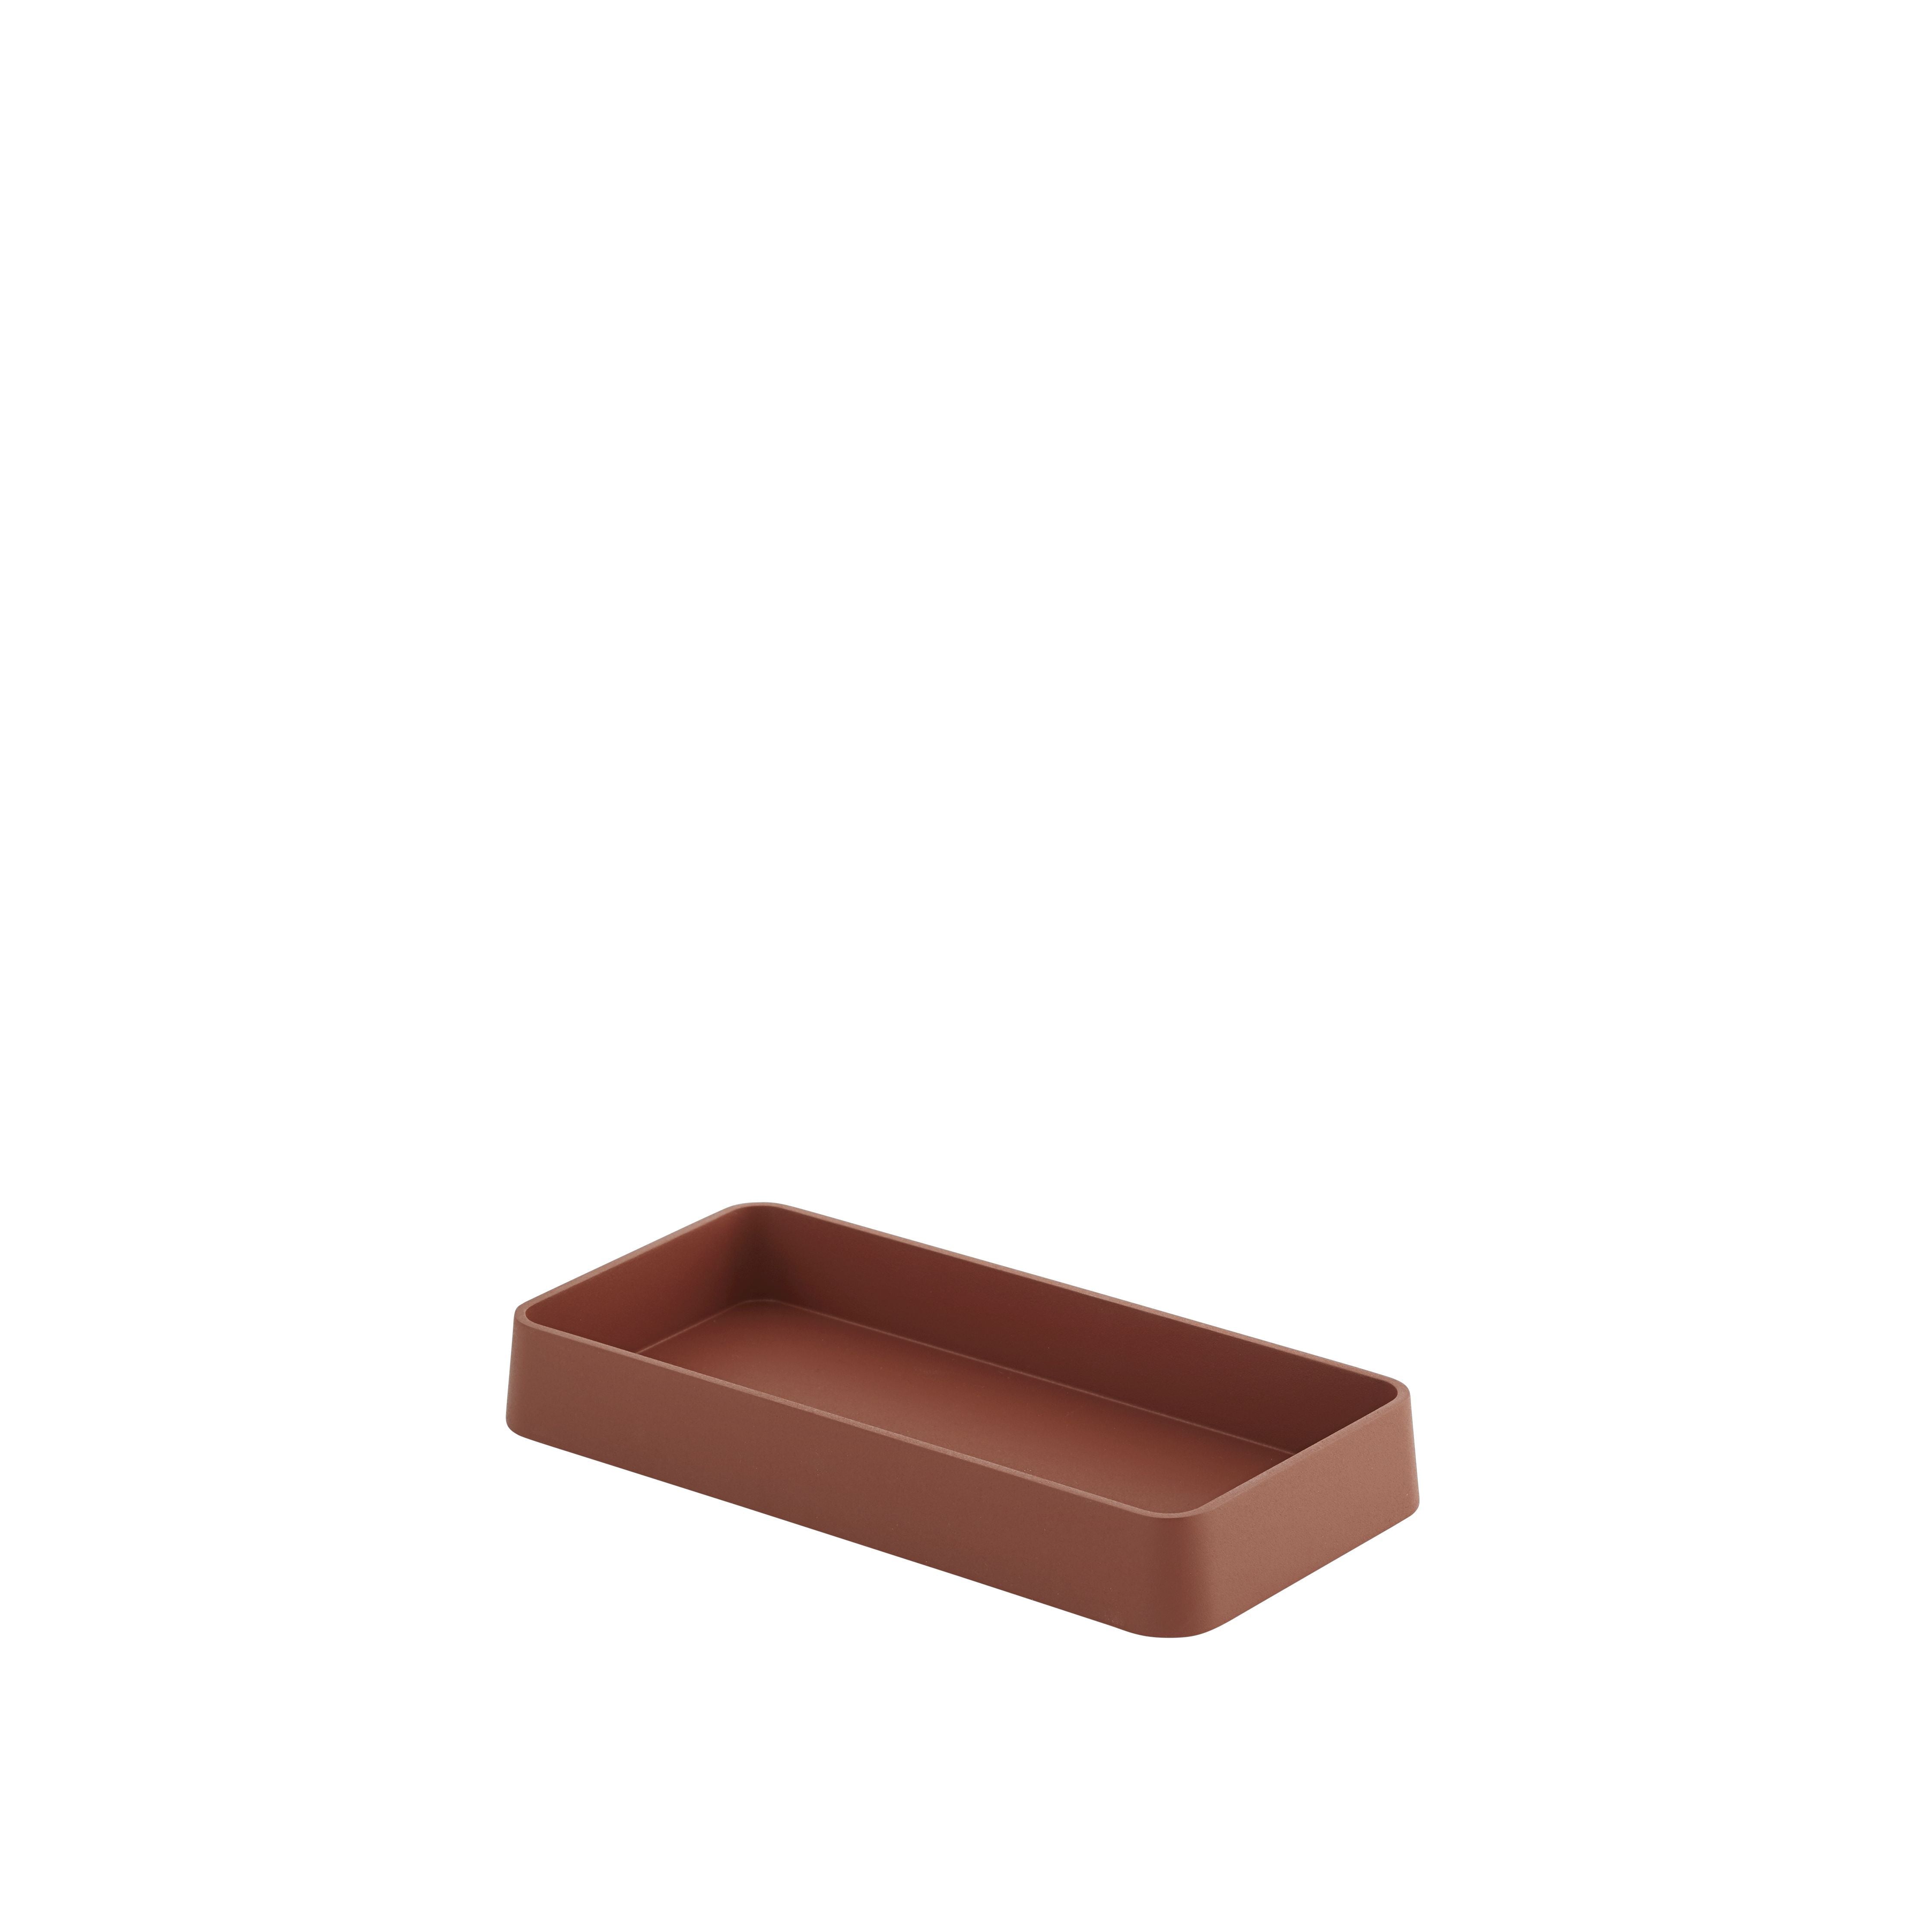 Bandeja de la serie de escritorio Muuto organizar, cobre marrón